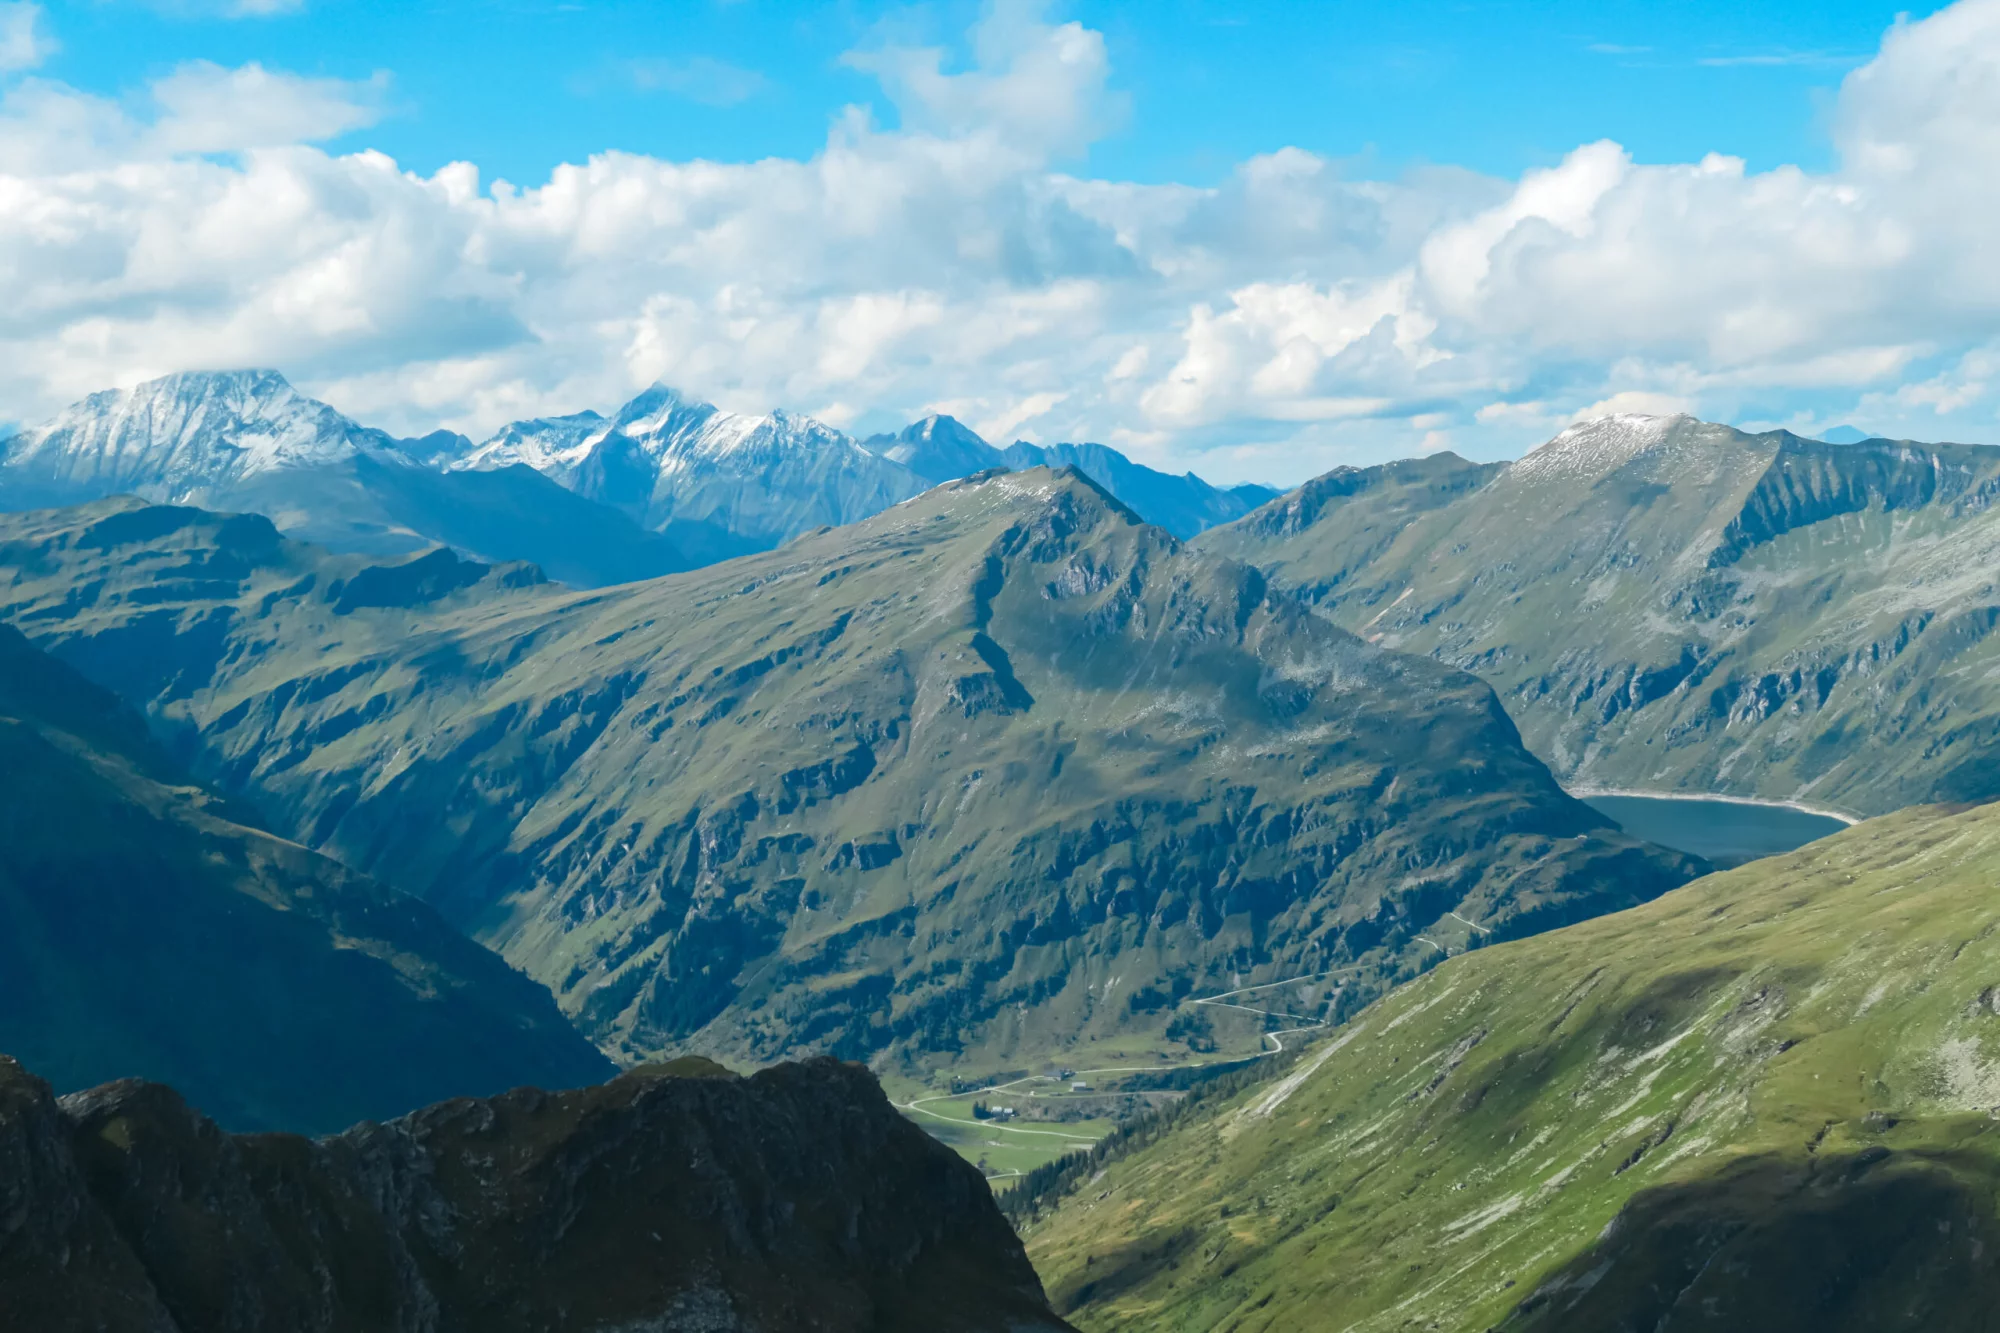 Vista panorámica de los majestuosos picos nevados del grupo Glockner en el Parque Nacional de High Tauern, Carintia Salzburgo, Austria. Wanderlust en los Alpes austriacos. Mirando desde el monte Greilkopf. Escapismo